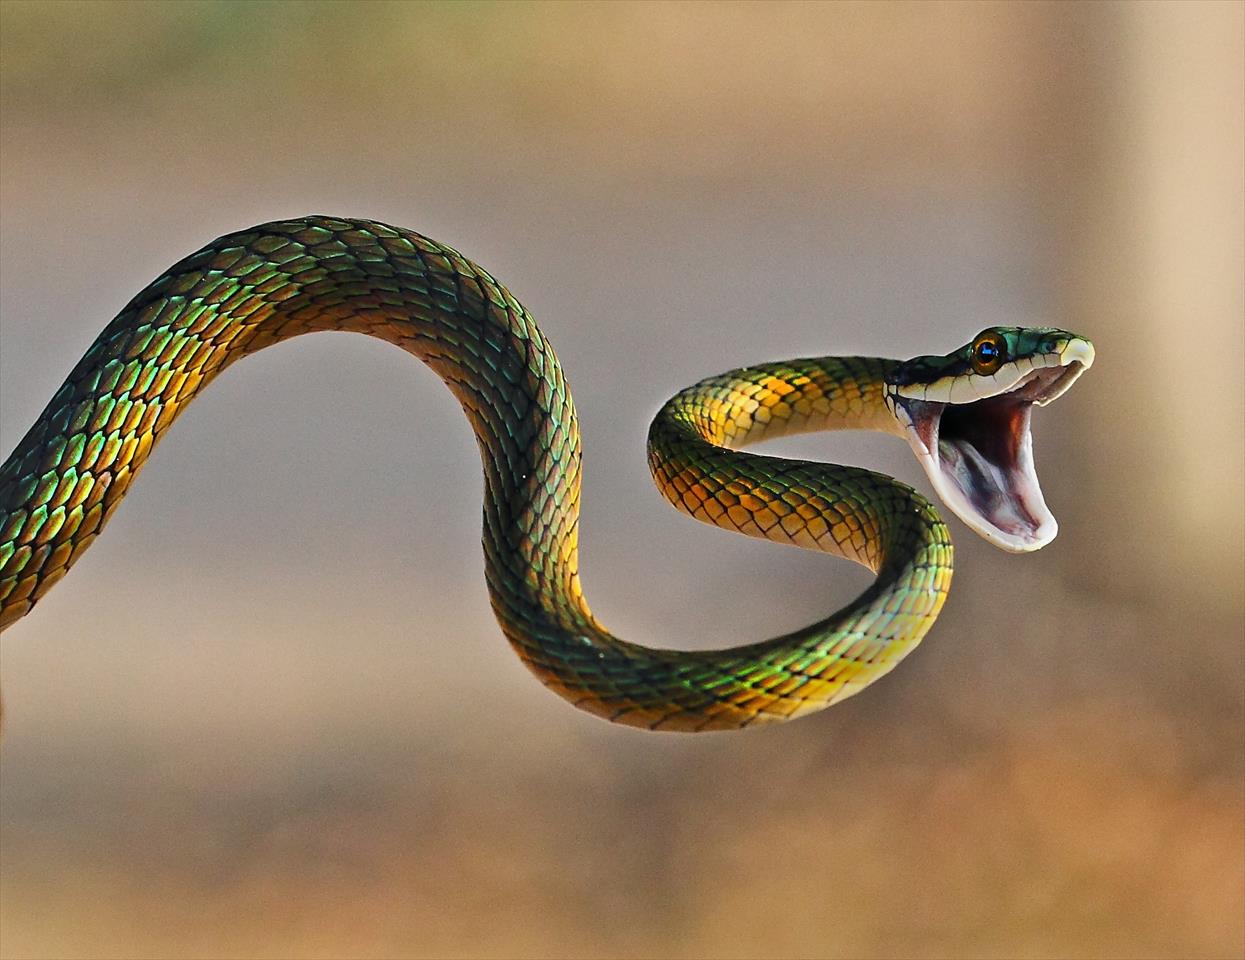 Serpente confunde banhistas ao devorar lagarto: 'Achei que era lixo'